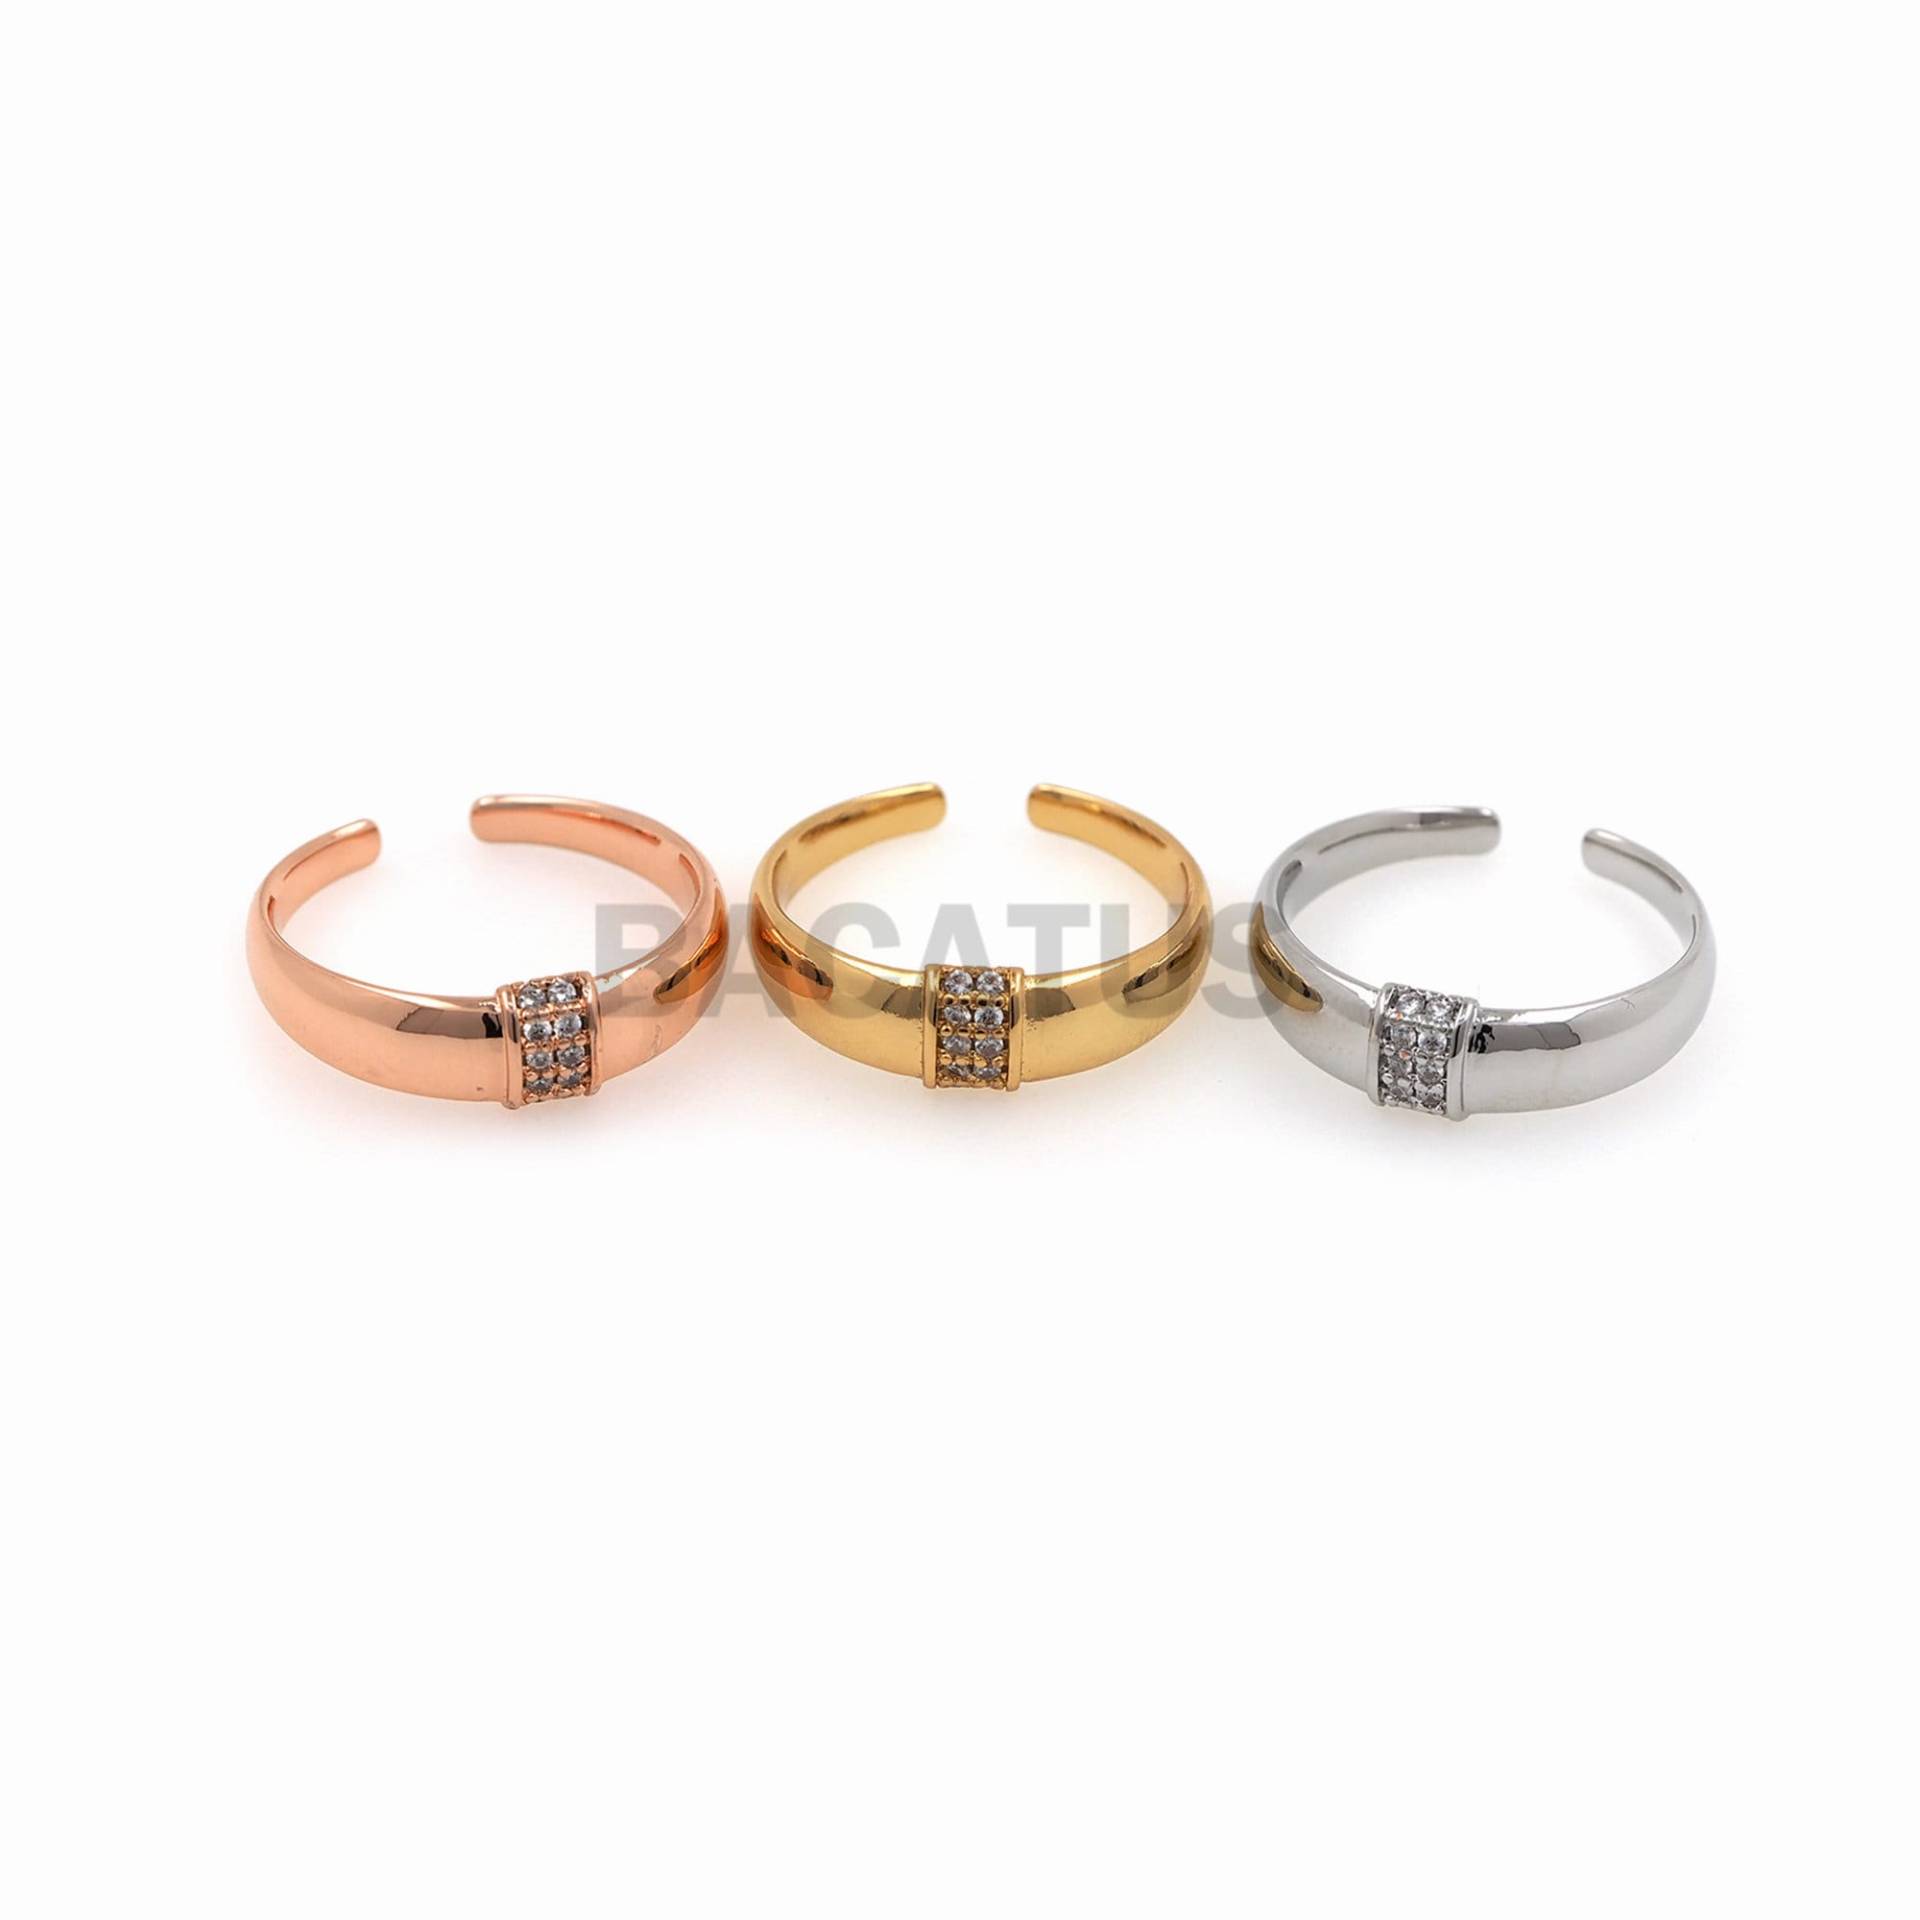 1stk Rund Glänzende Ring Öffnung Verstellbar Schmuck Micro-Inlaid Zircon Damen Trendy Modeschmuck von BACATUSCR